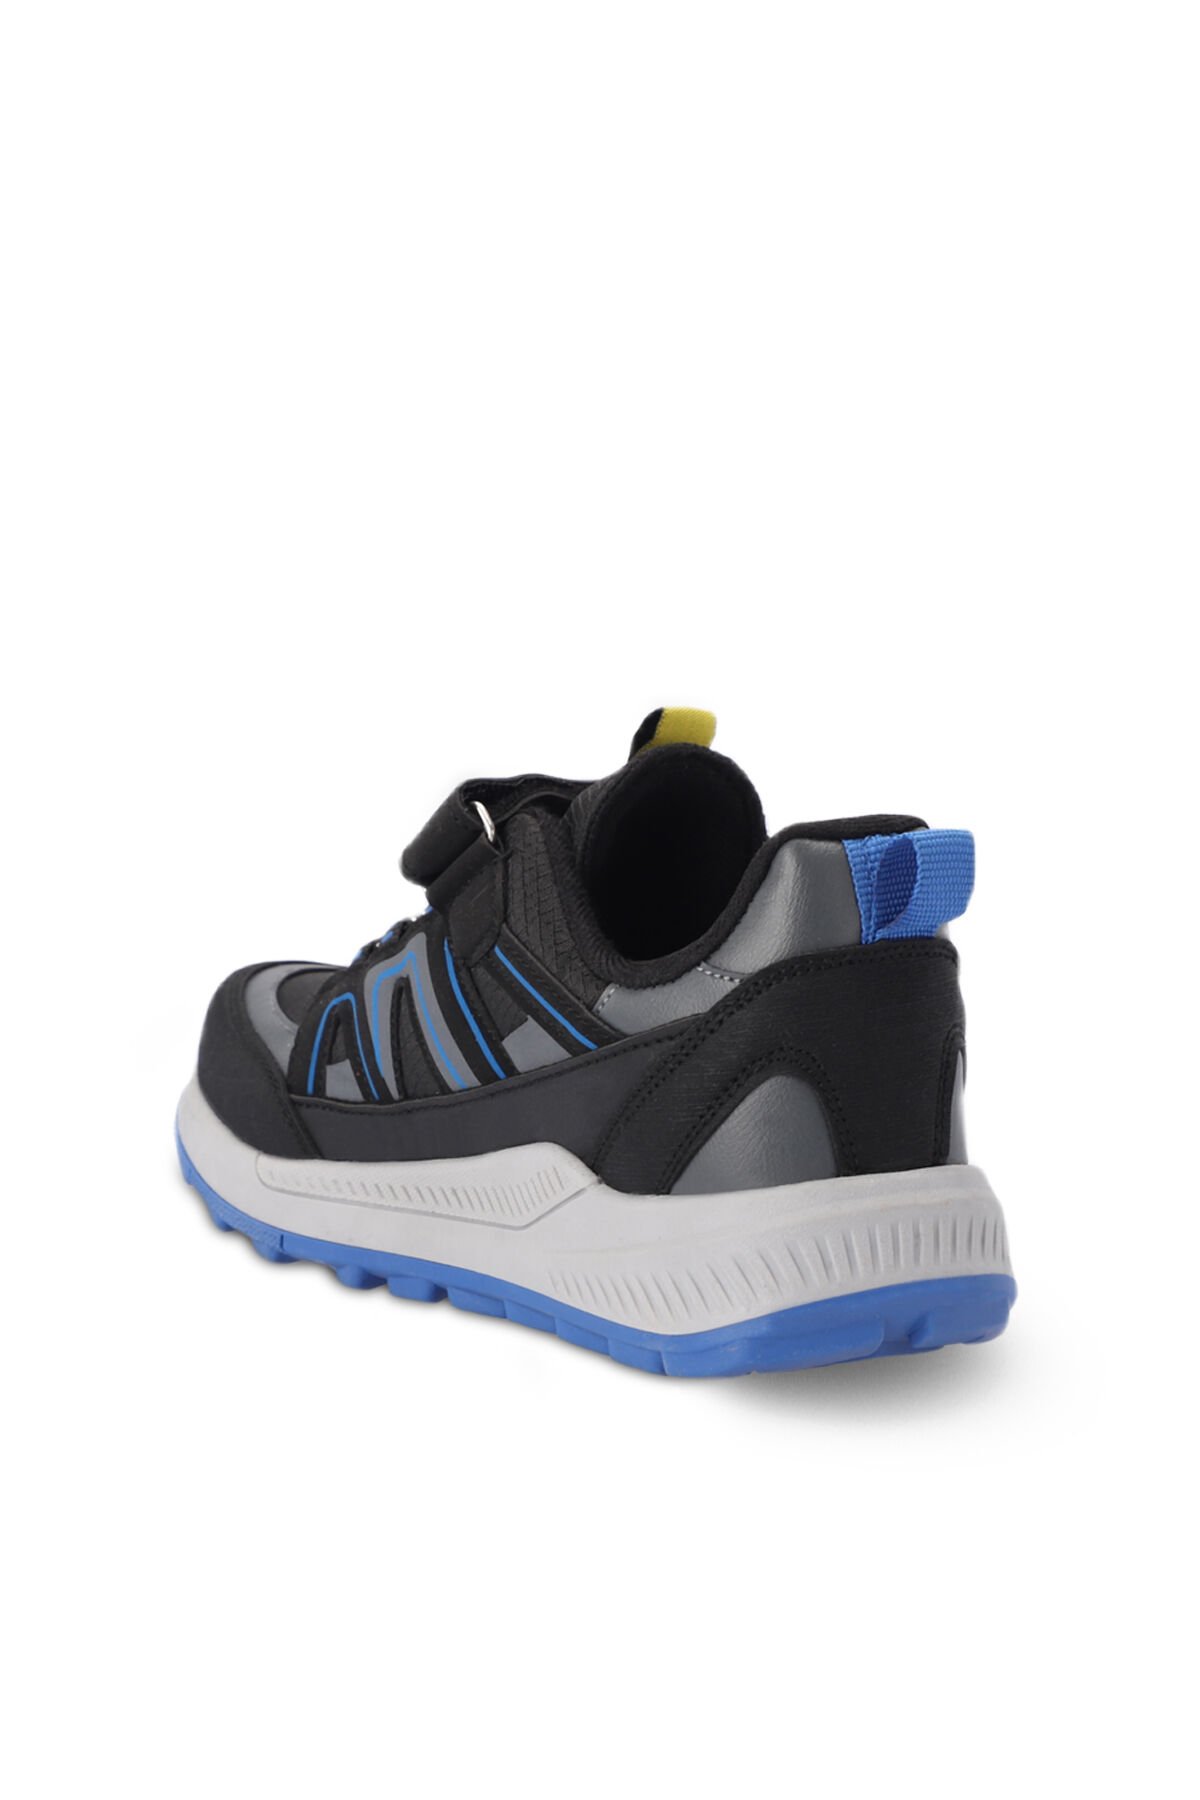 Slazenger KROSS KTN Sneaker Unisex Çocuk Ayakkabı Siyah / Saks Mavi - Thumbnail